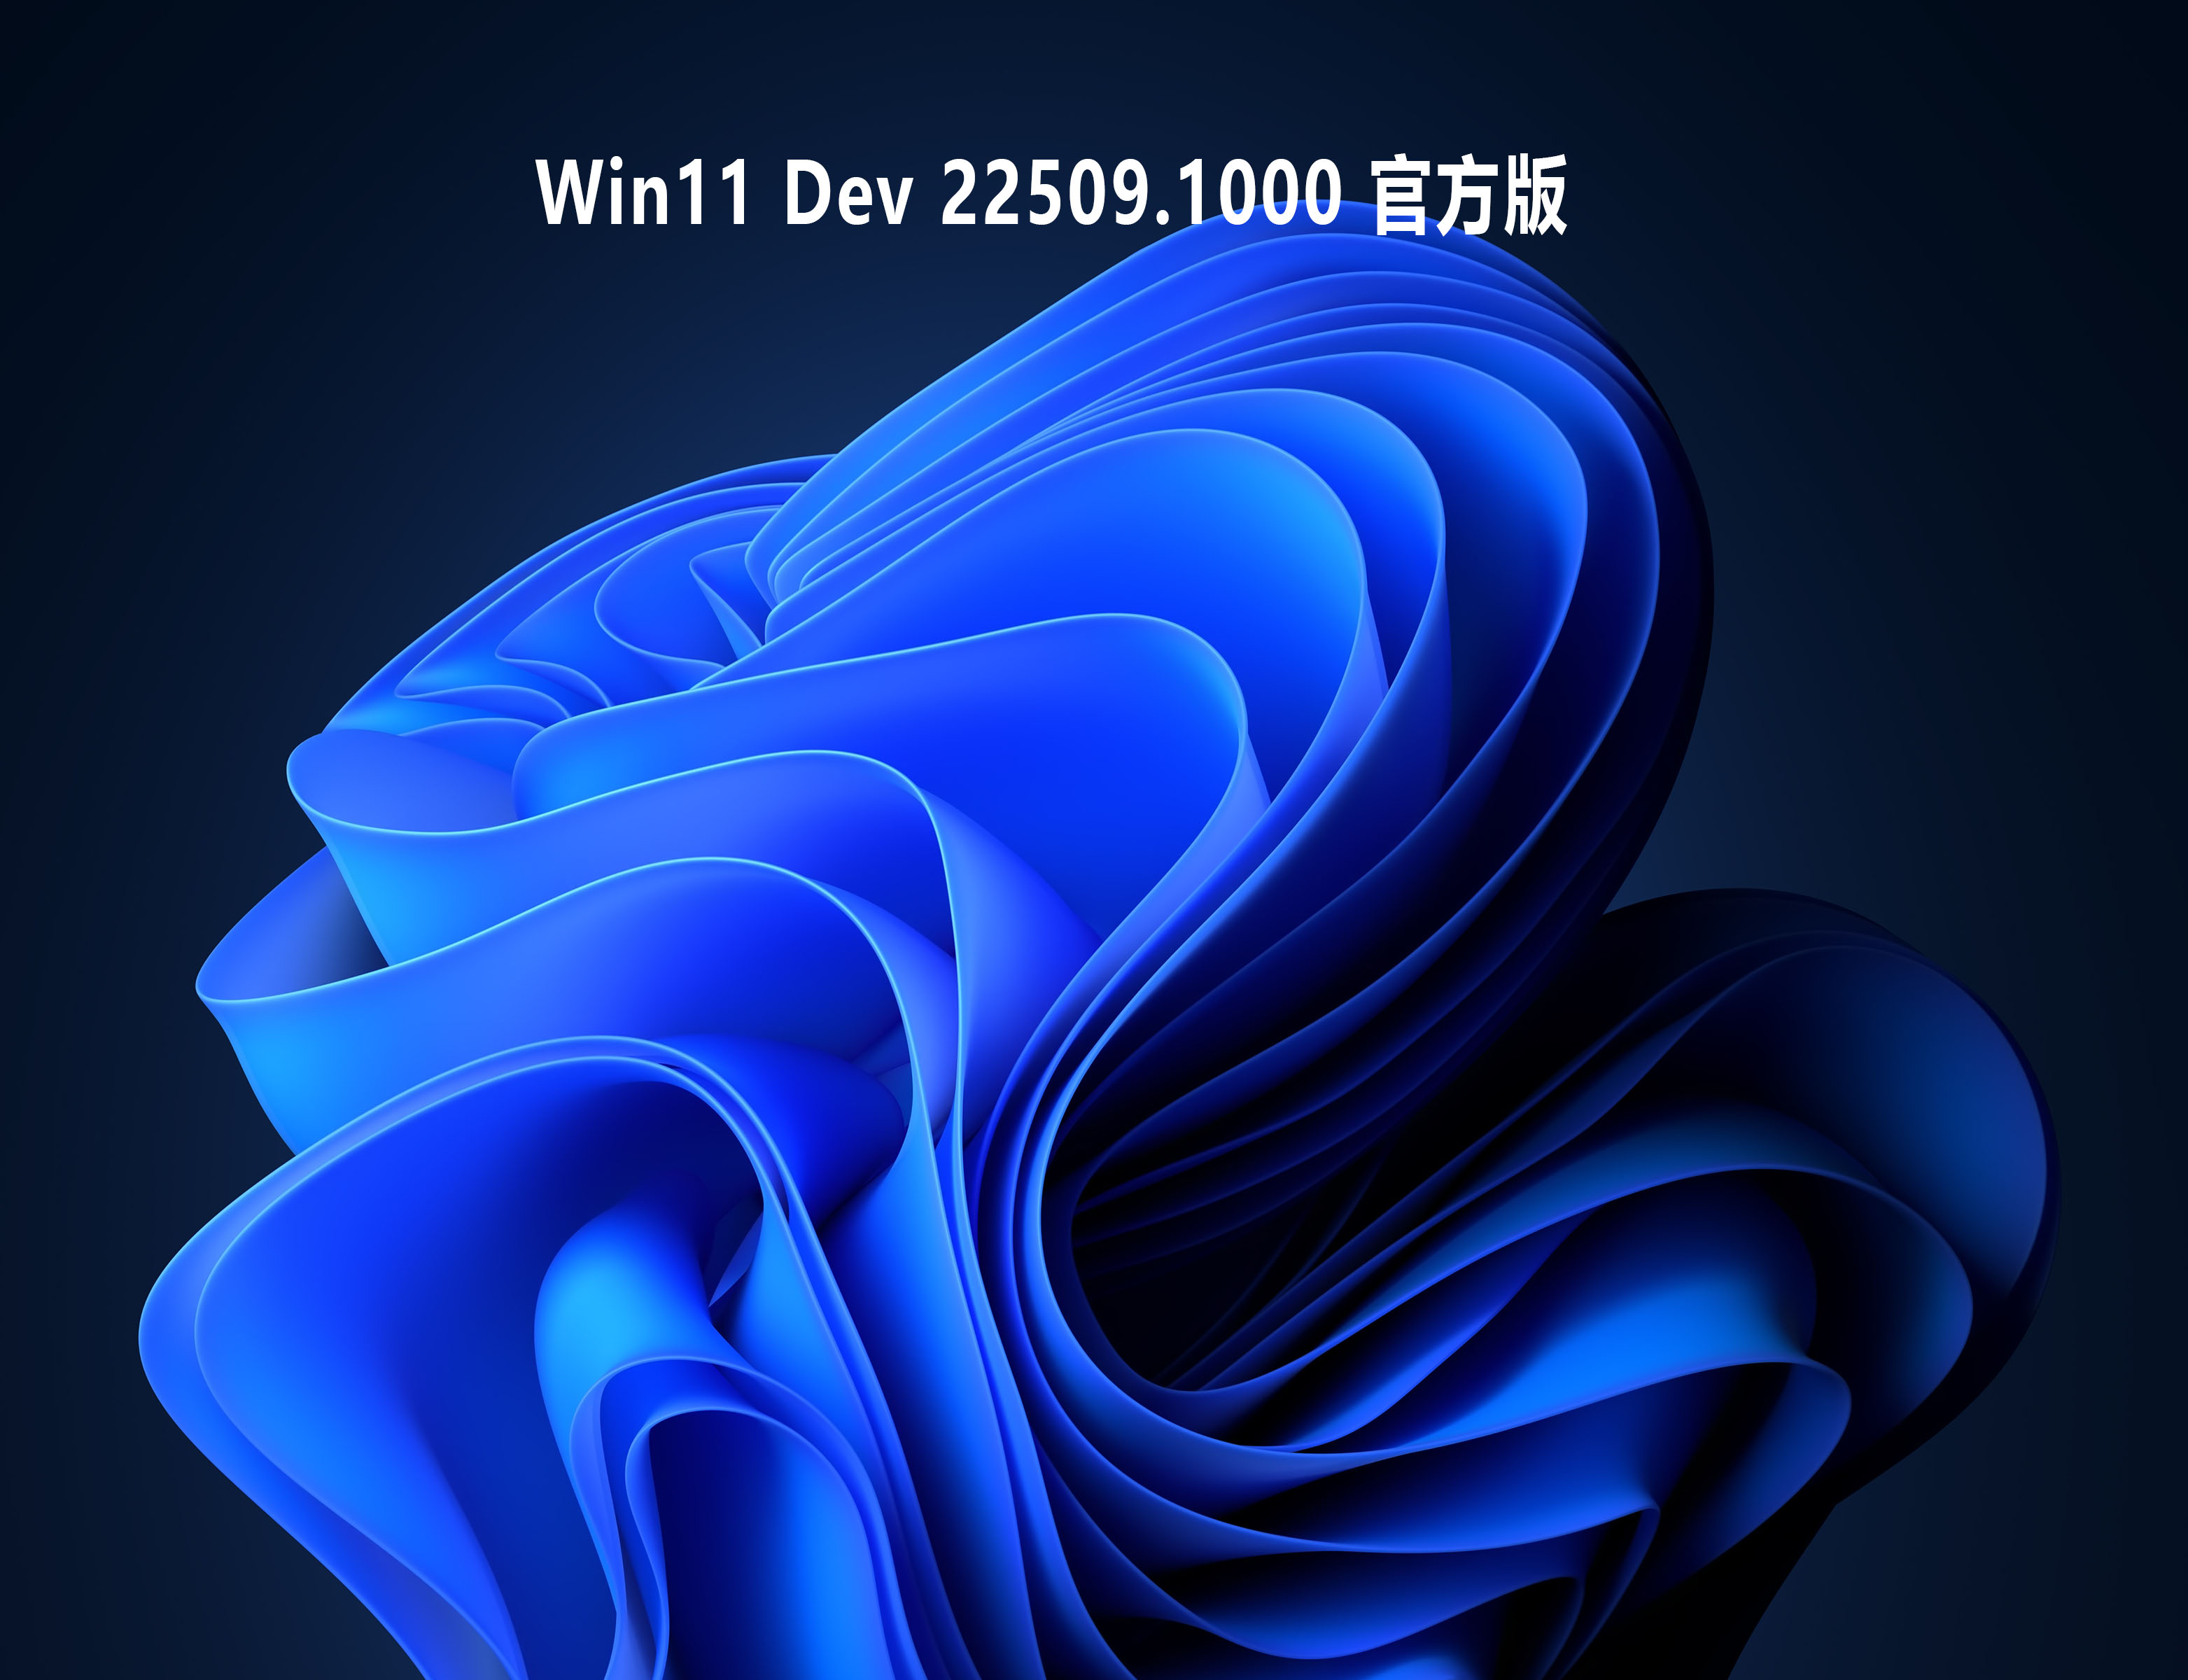 Win11 Dev 22509.1000 官方版